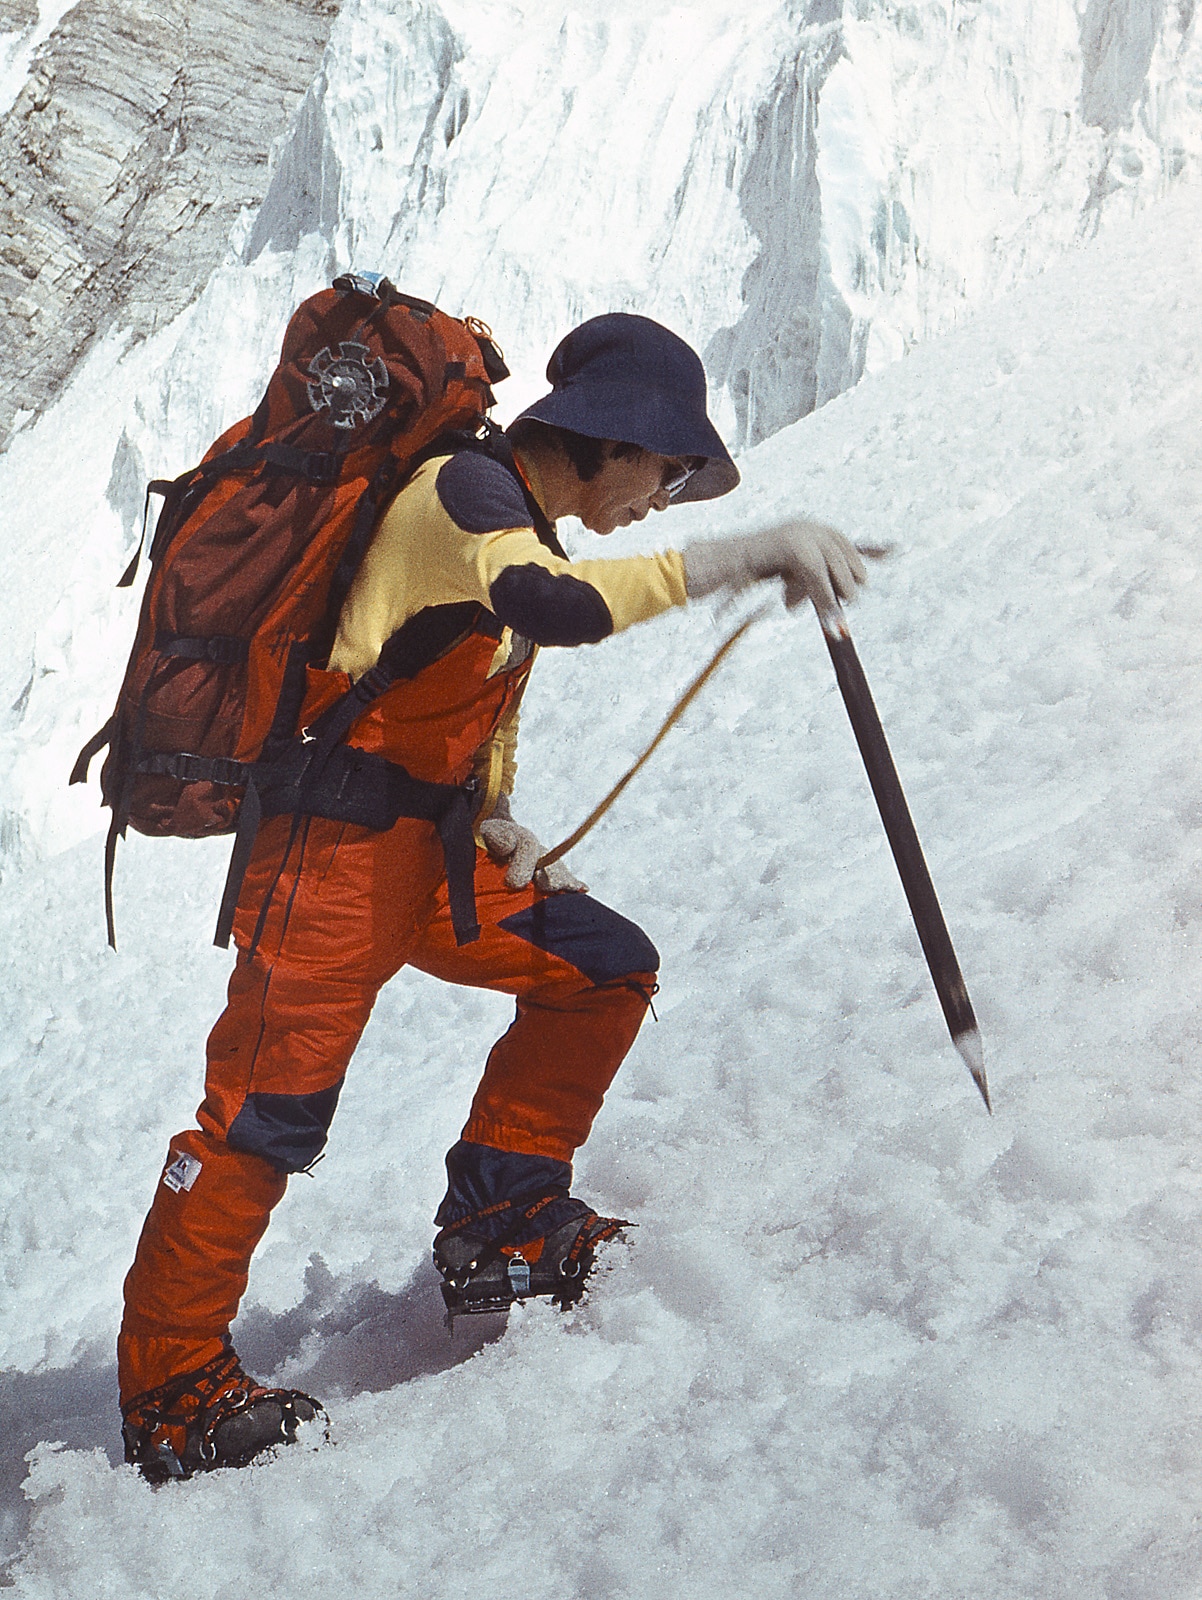 Die japanische Bergsteigerin Junko Tabei 1985 auf ihrem Weg zum Gipfel des Pik Ismoil Somoni, dem höchsten Berg Tadschikistans 